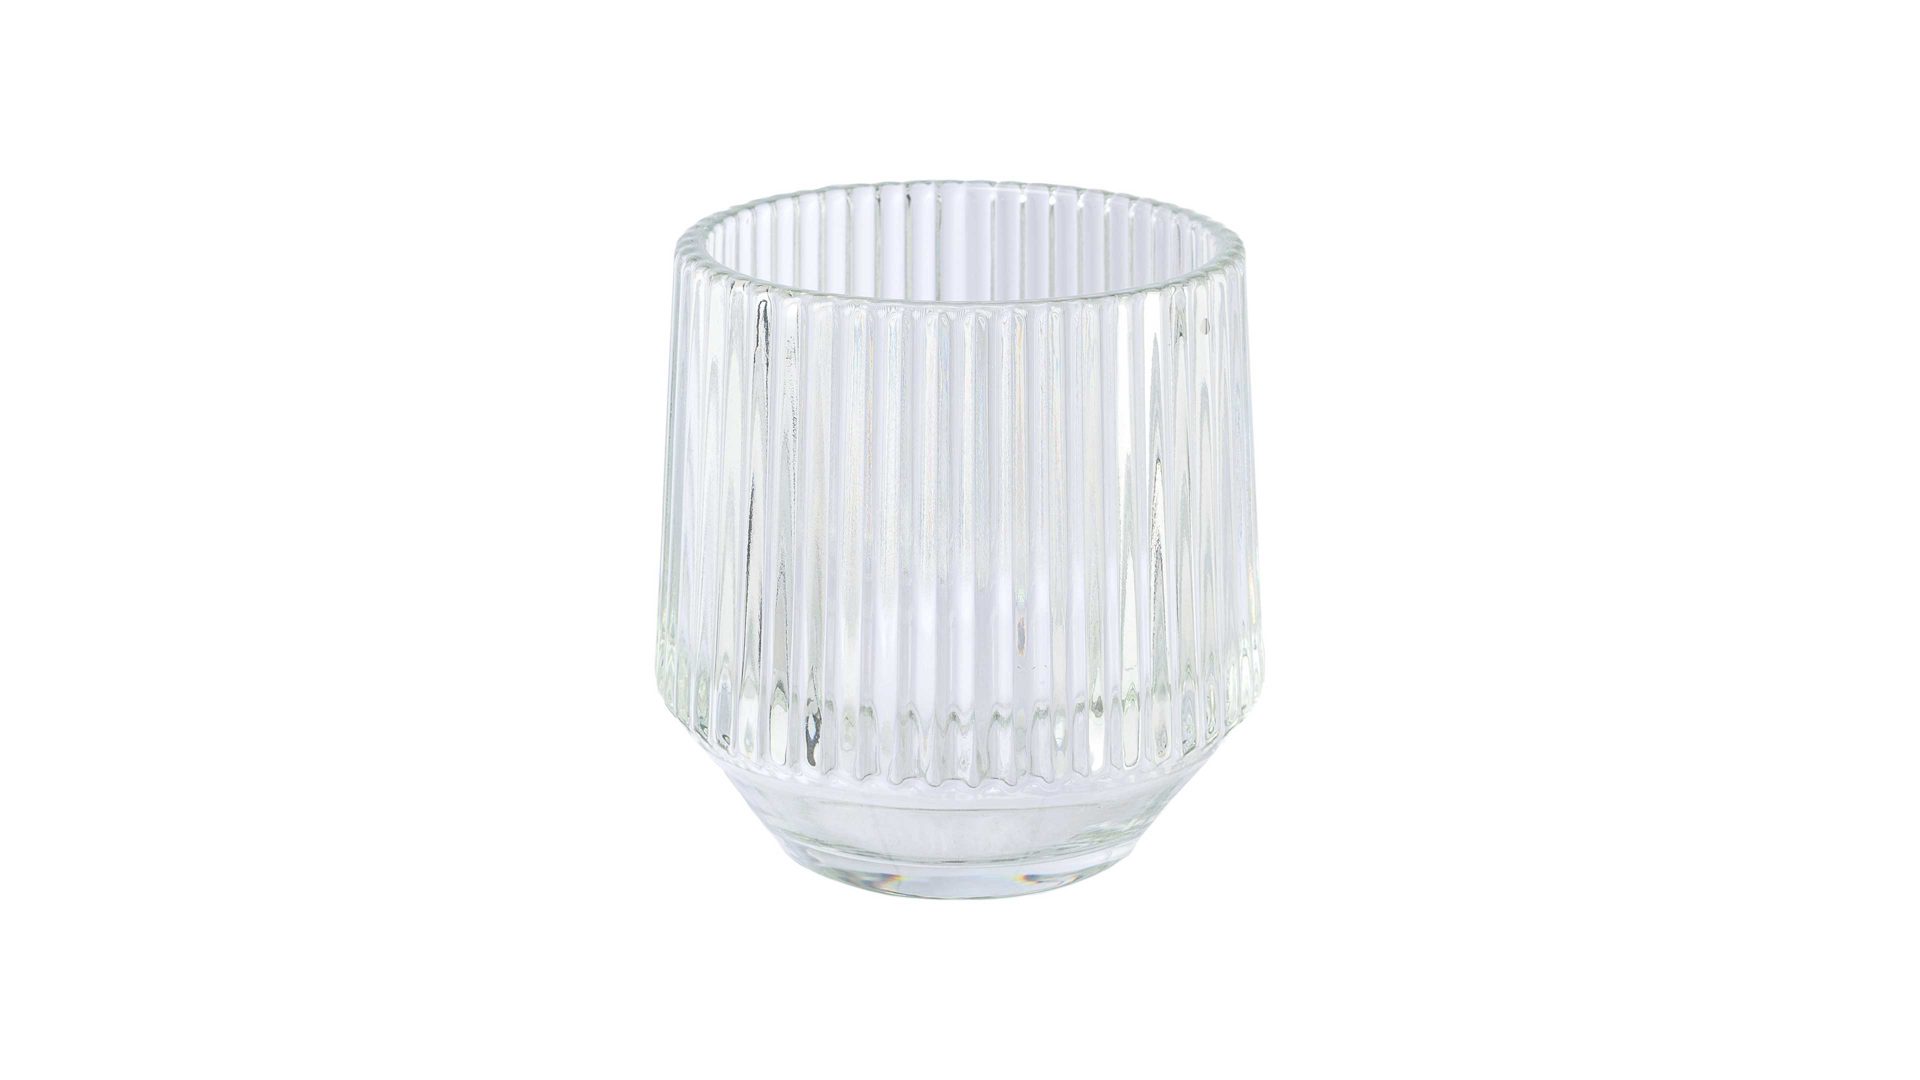 Windlicht Interliving BEST BUDDYS! aus Glas in Transparent Interliving BEST BUDDYS! Teelichtglas Tayra Klarglas - Höhe ca. 10 cm